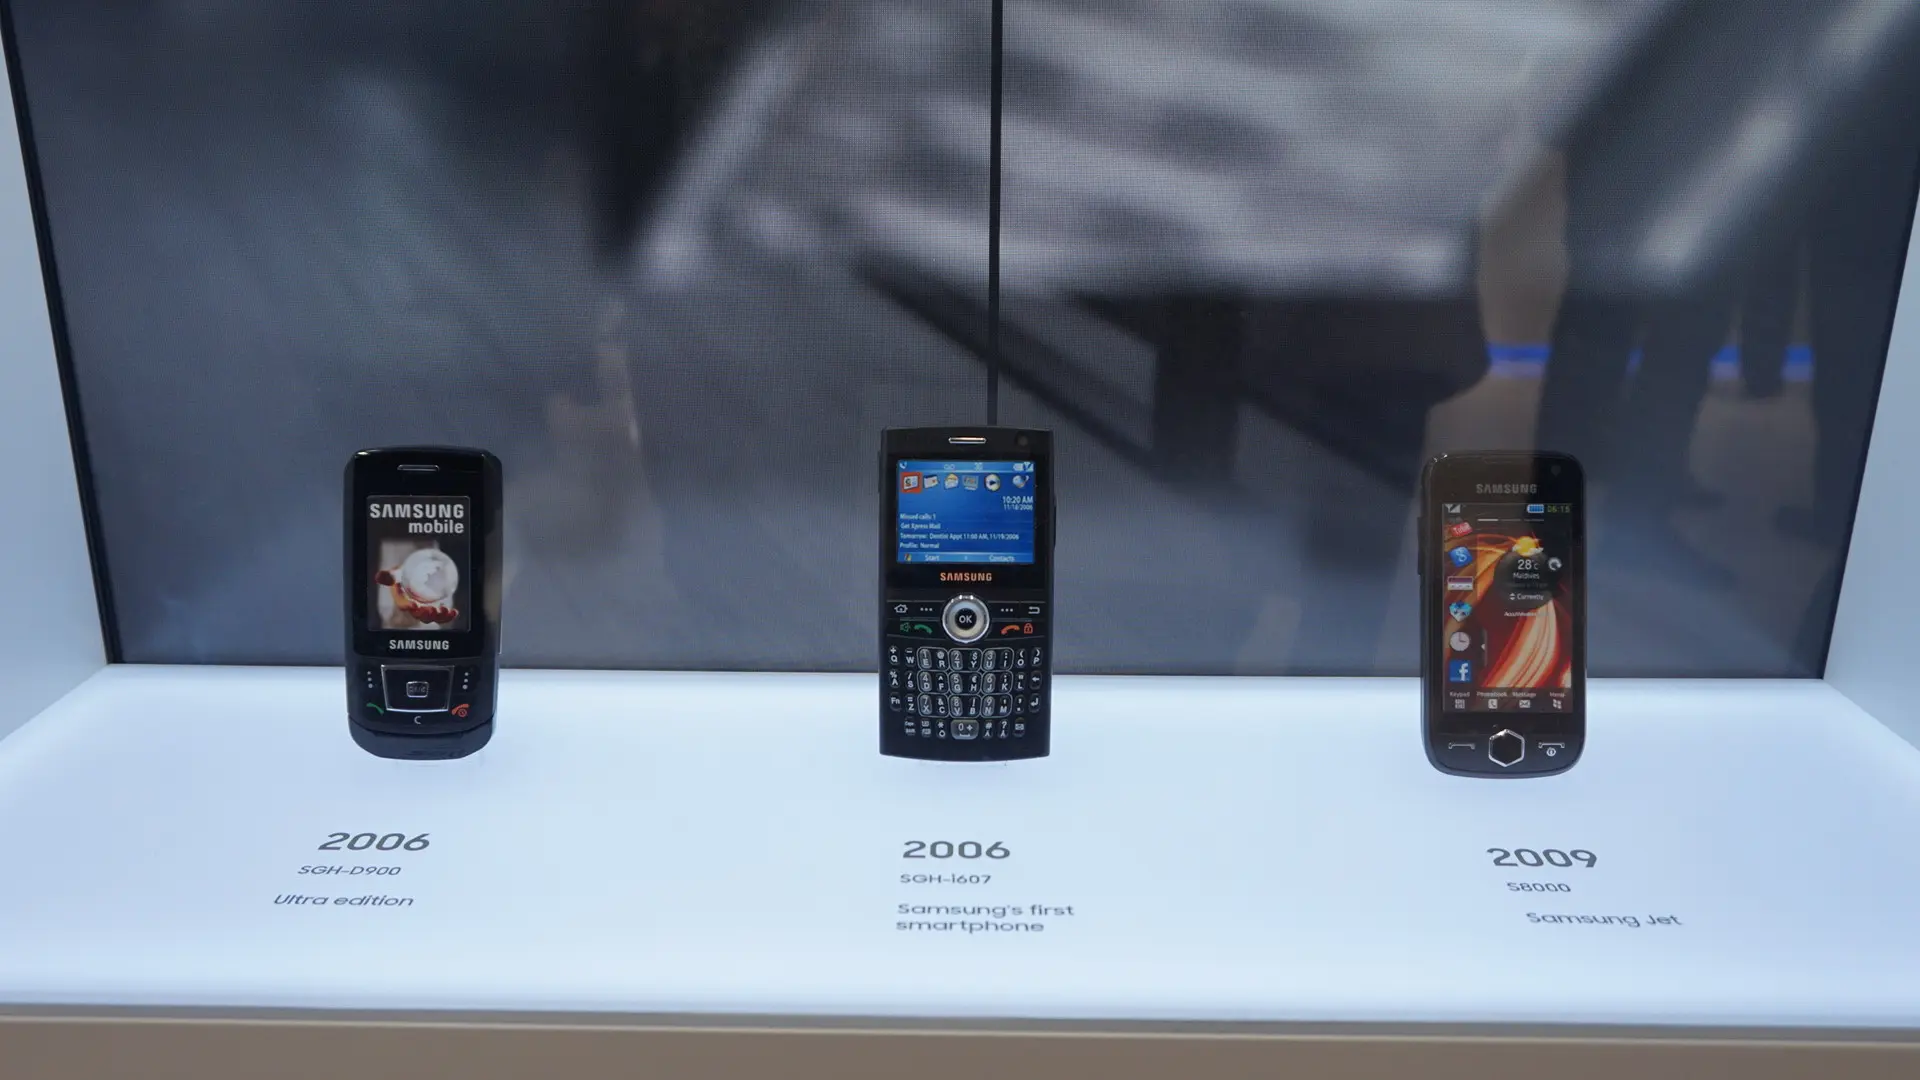 Samsung juga memamerkan smartphones lawasnya yang memiliki nilai sejarah untuk perusahaan (Liputan6.com/ Agustin Setyo W)